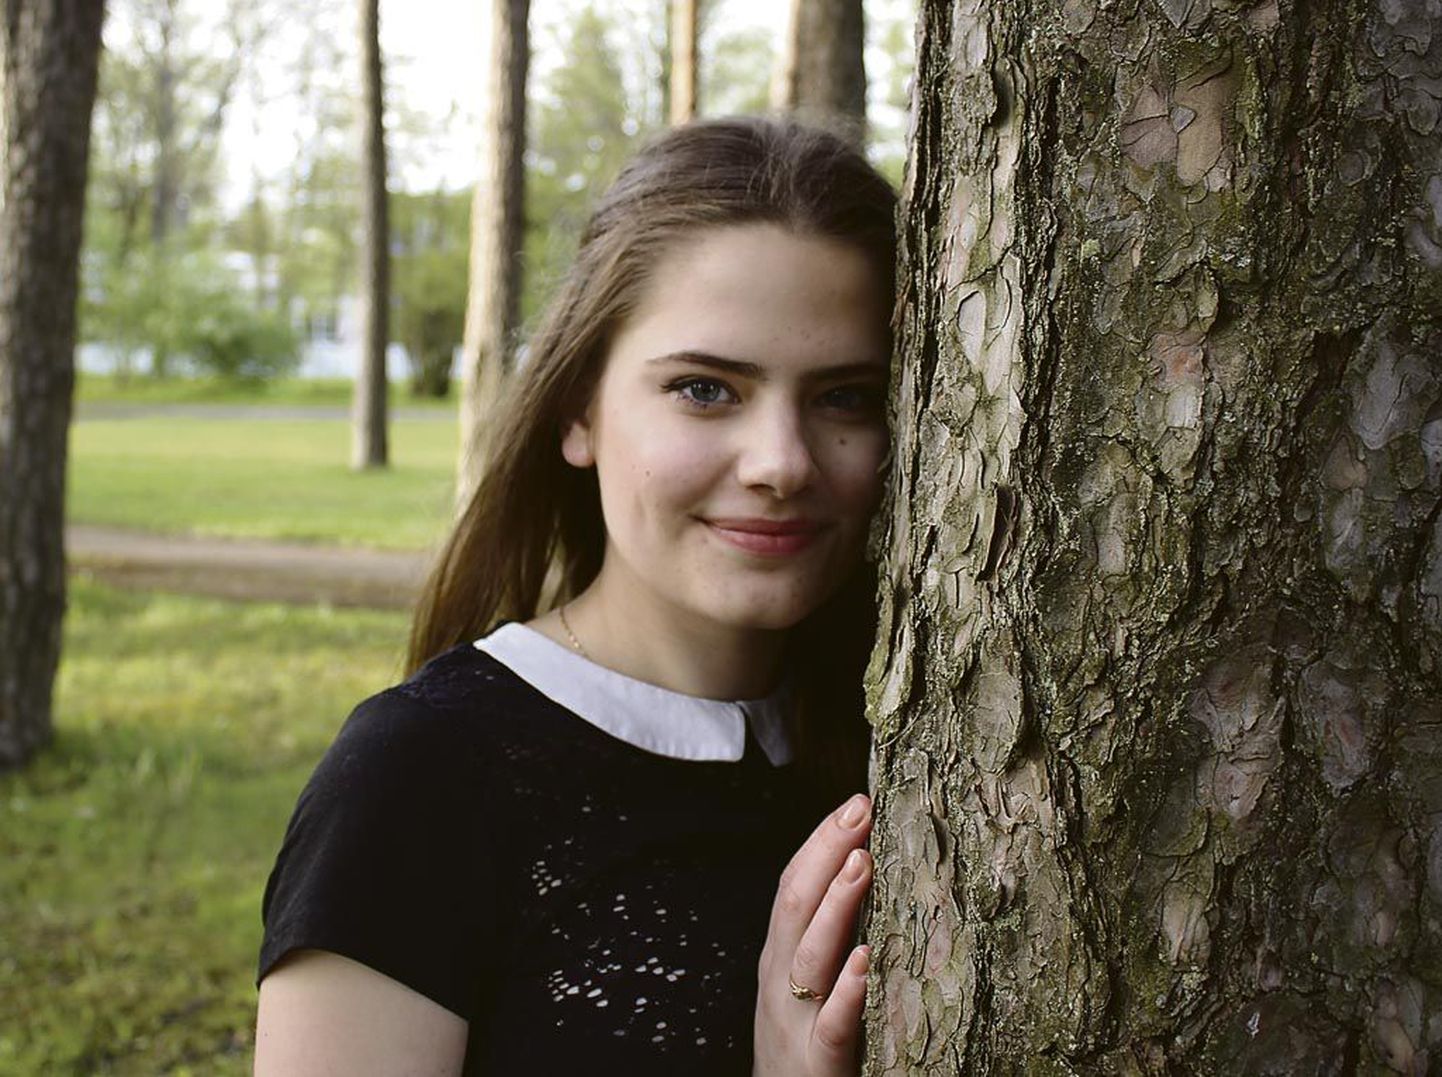 Aasta aktiivne noor Laura Kiviselg on kindel, et tema tulevik on seotud Pärnuga. Juba praegu kuulub ta linnavolikogu noortekogu komisjoni.